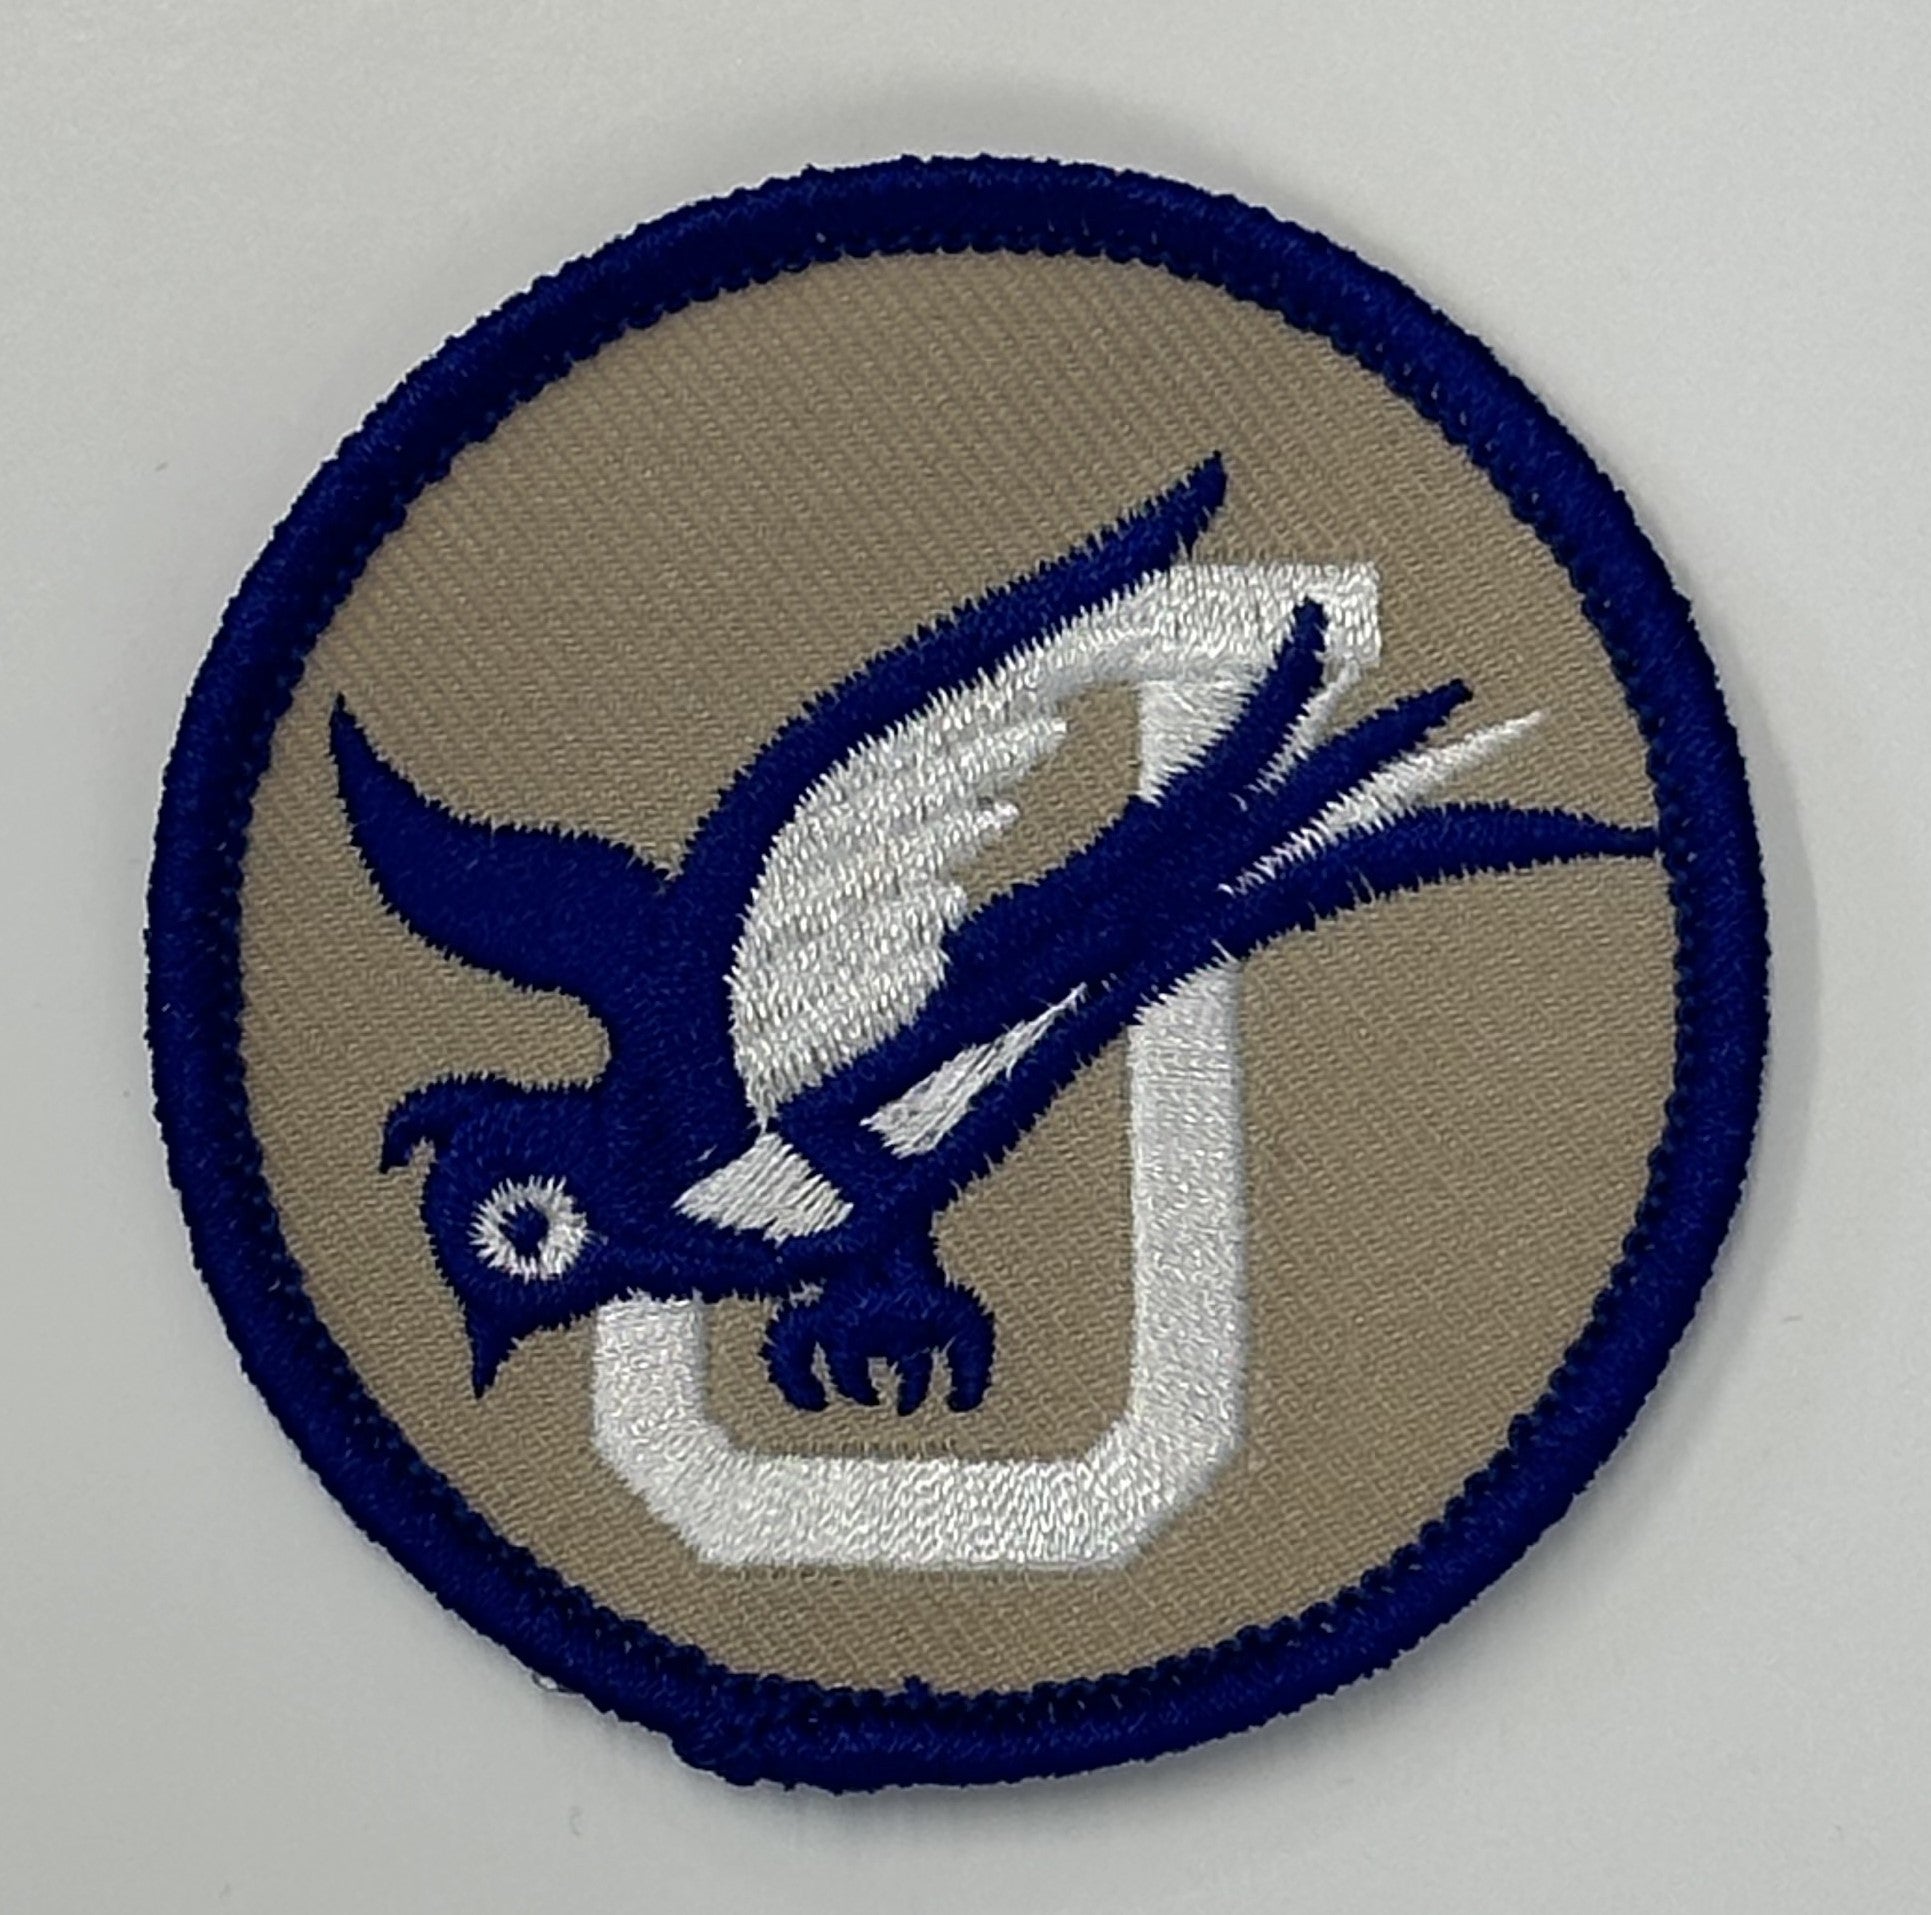 Official Jesuit uniform patch.  2 1/2 inch round.